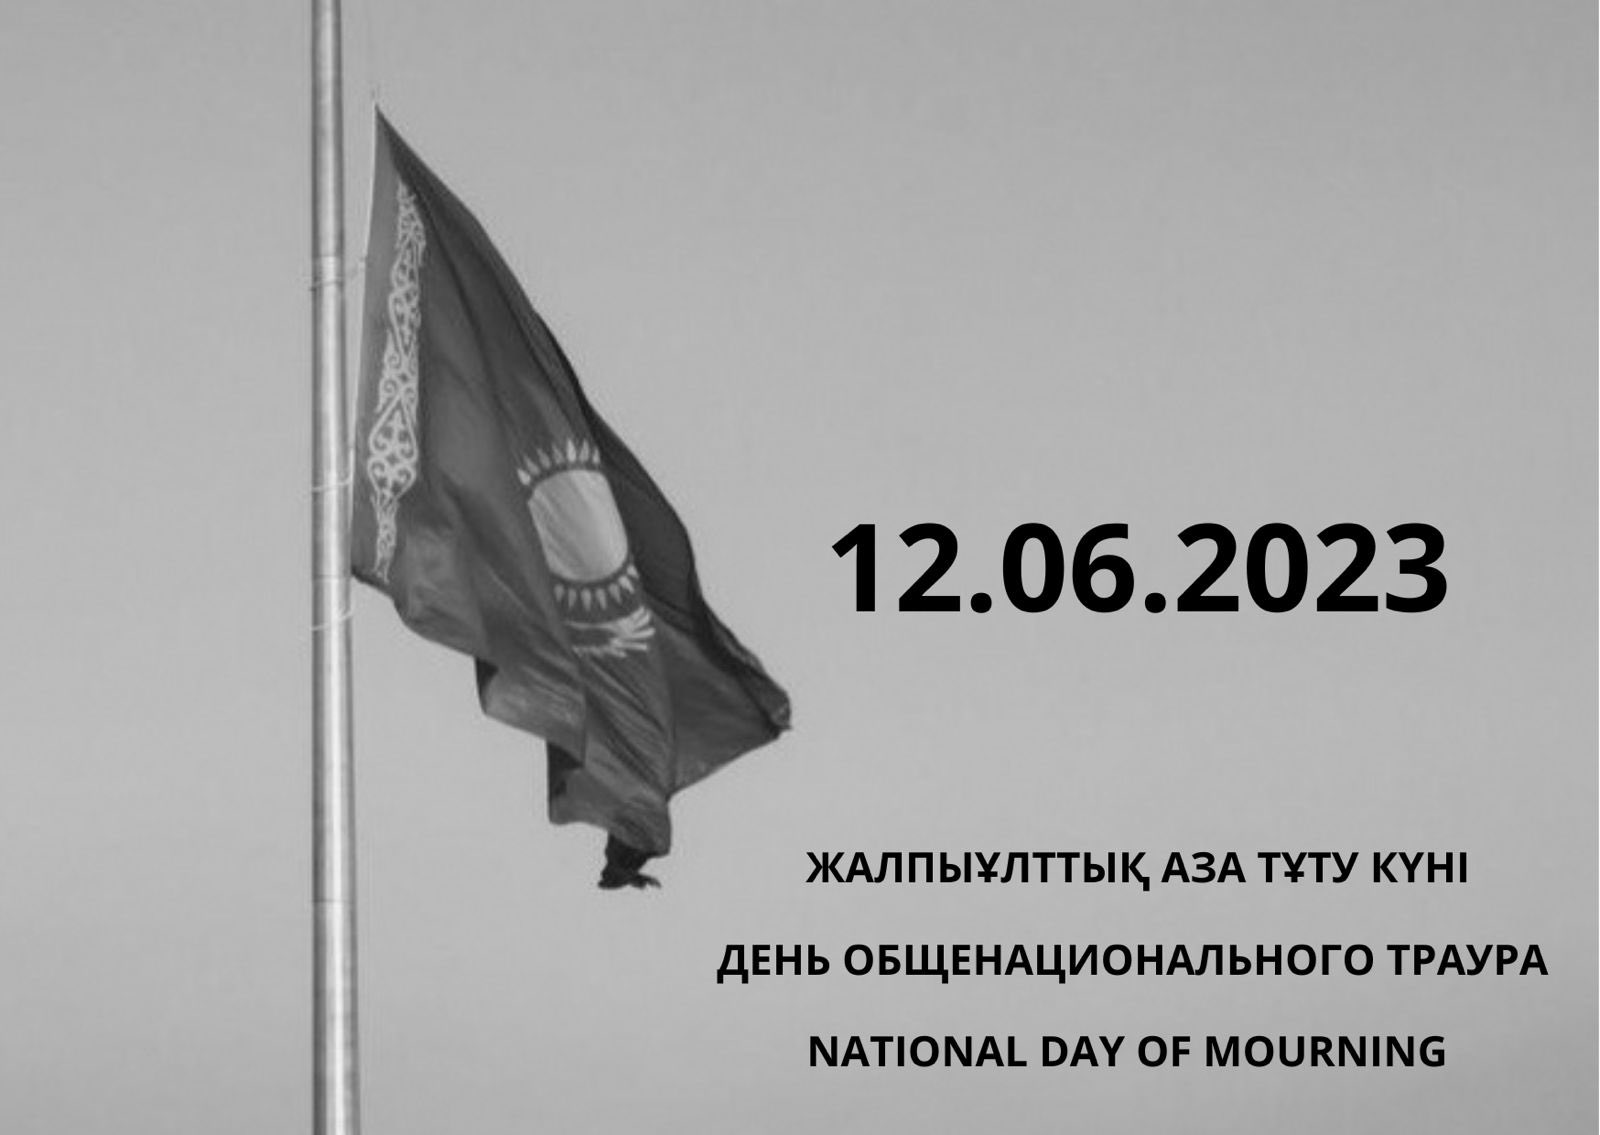 Сегодня день общенационального траура. 12 Июня траур в Казахстане 2023 год. Траур в Казахстане 2023. Июнь 2023 день траура. 12 Июня день траура в Казахстане.